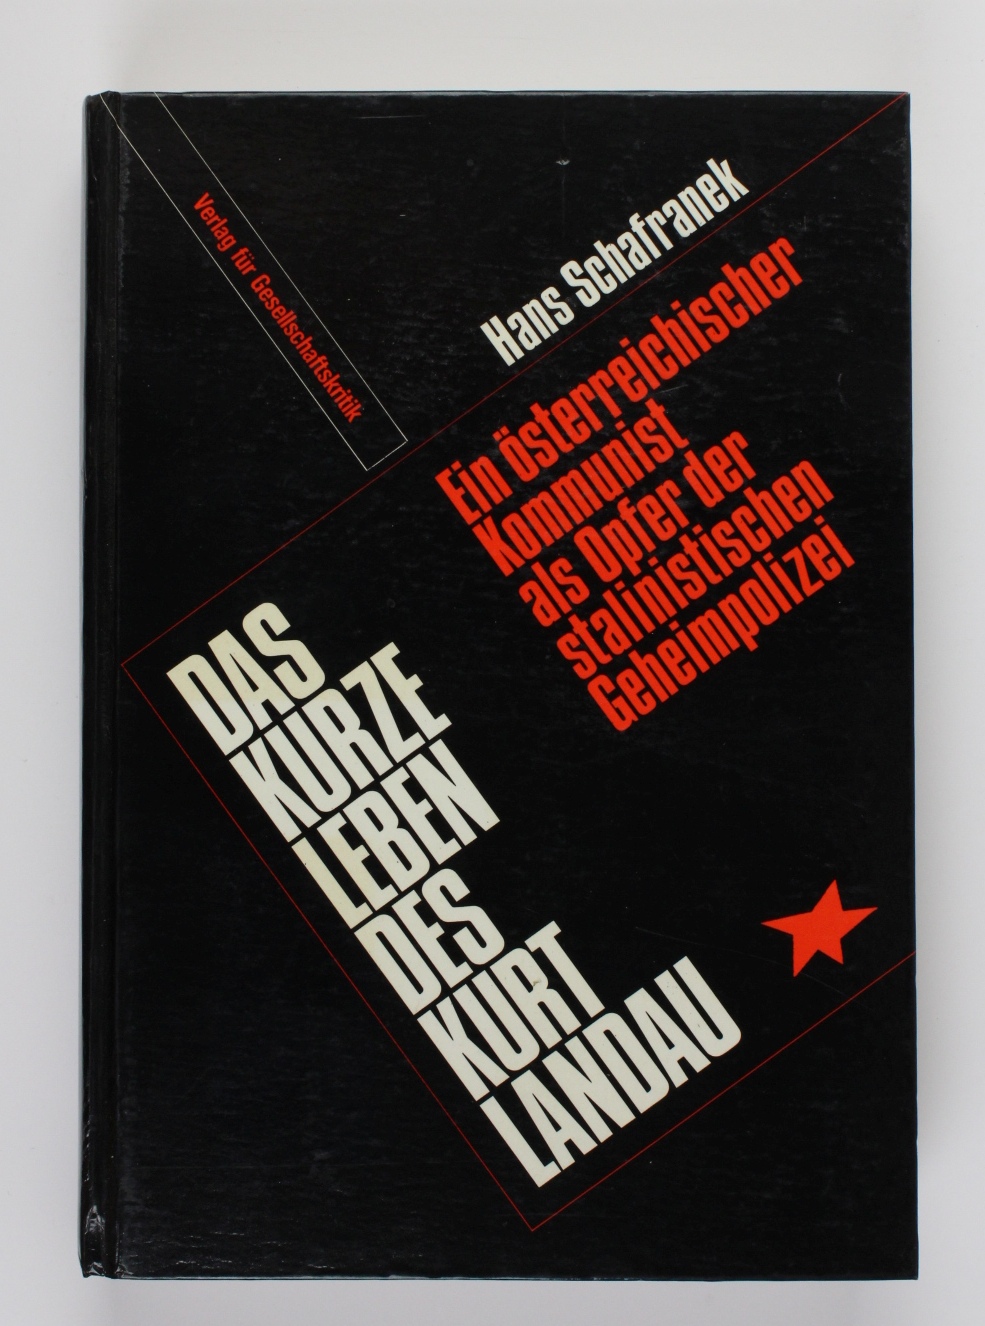 Das kurze Leben des Kurt Landau: Ein osterreichischer Kommunist als Opfer der stalinistischen Geheimpolizei (German Edition) - Schafranek, Hans